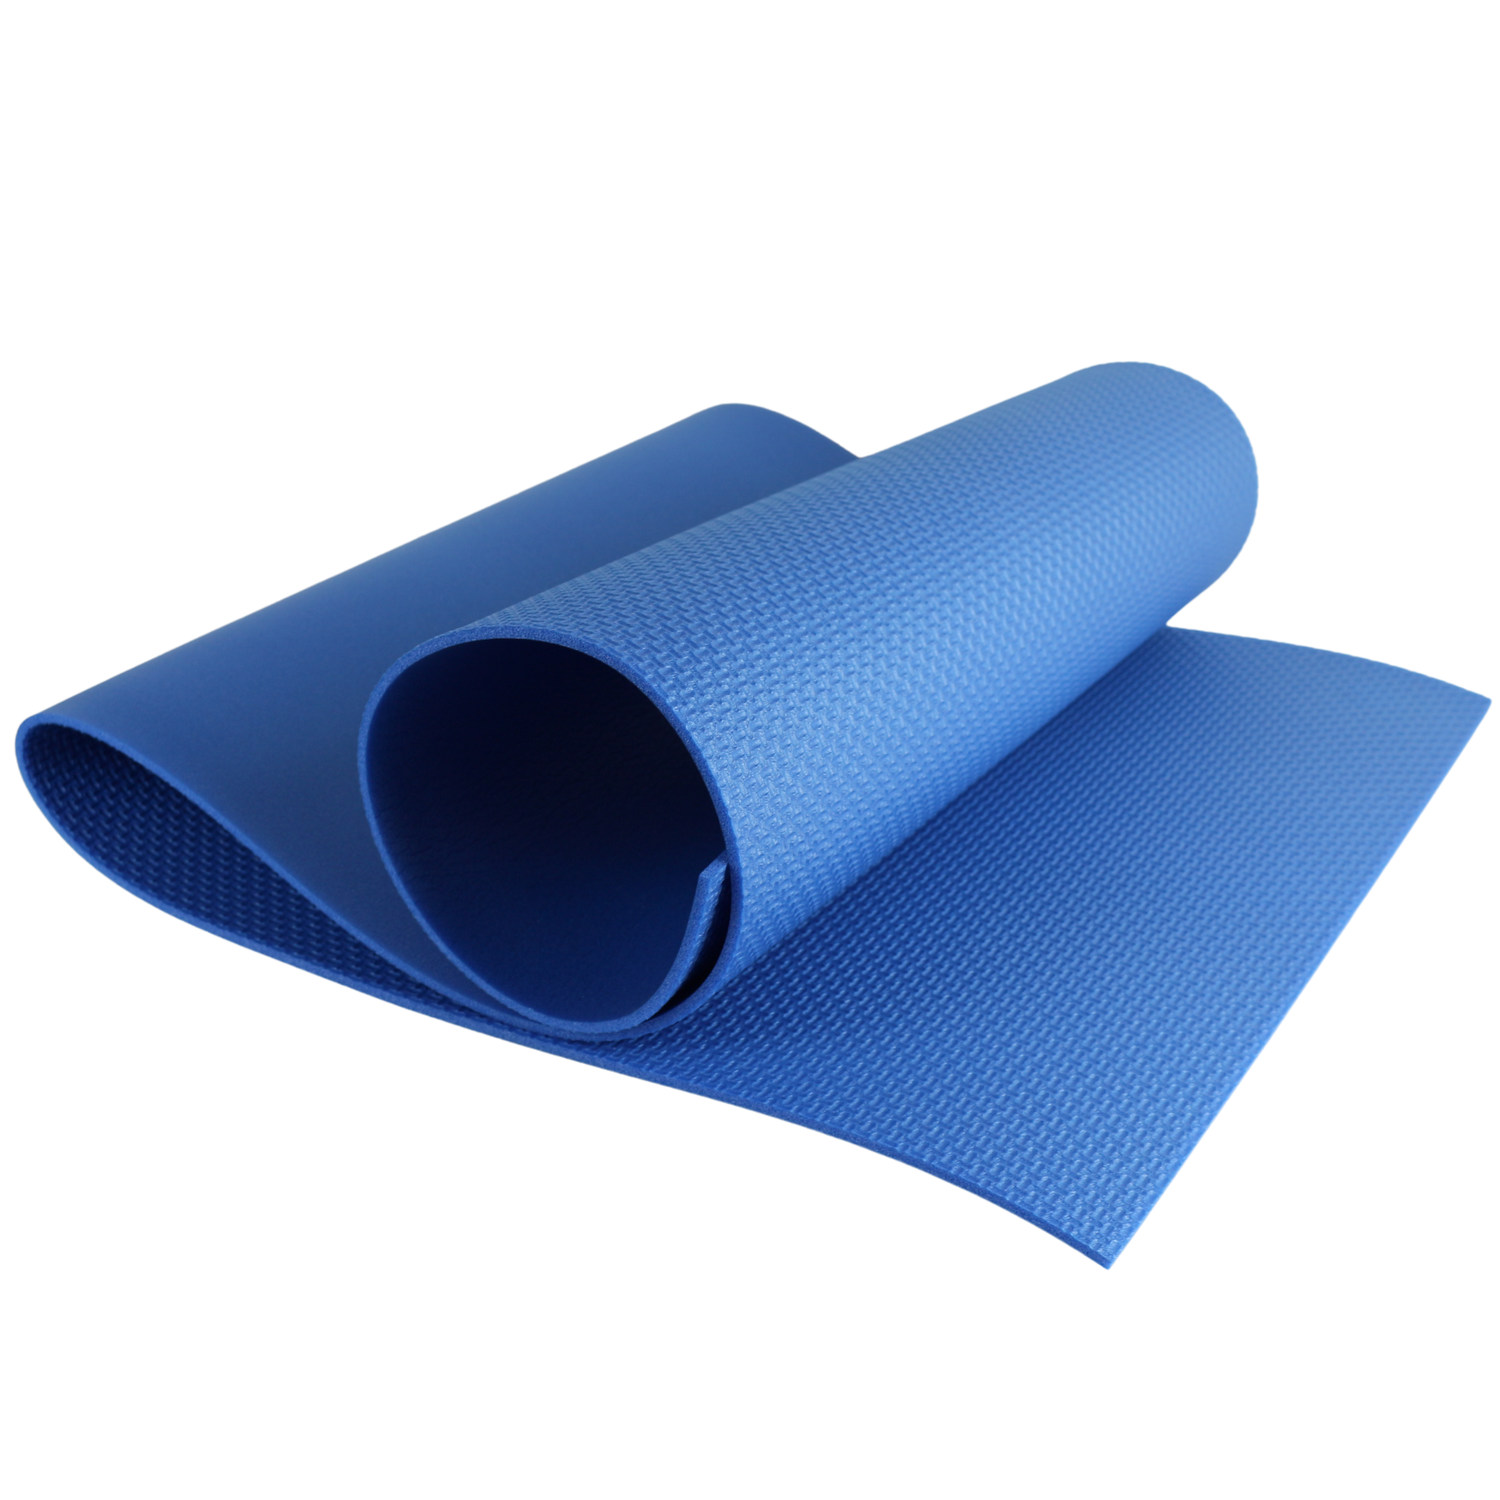 Коврик спортивный Espado Fitness 1400*500*5мм голубой - фото 1